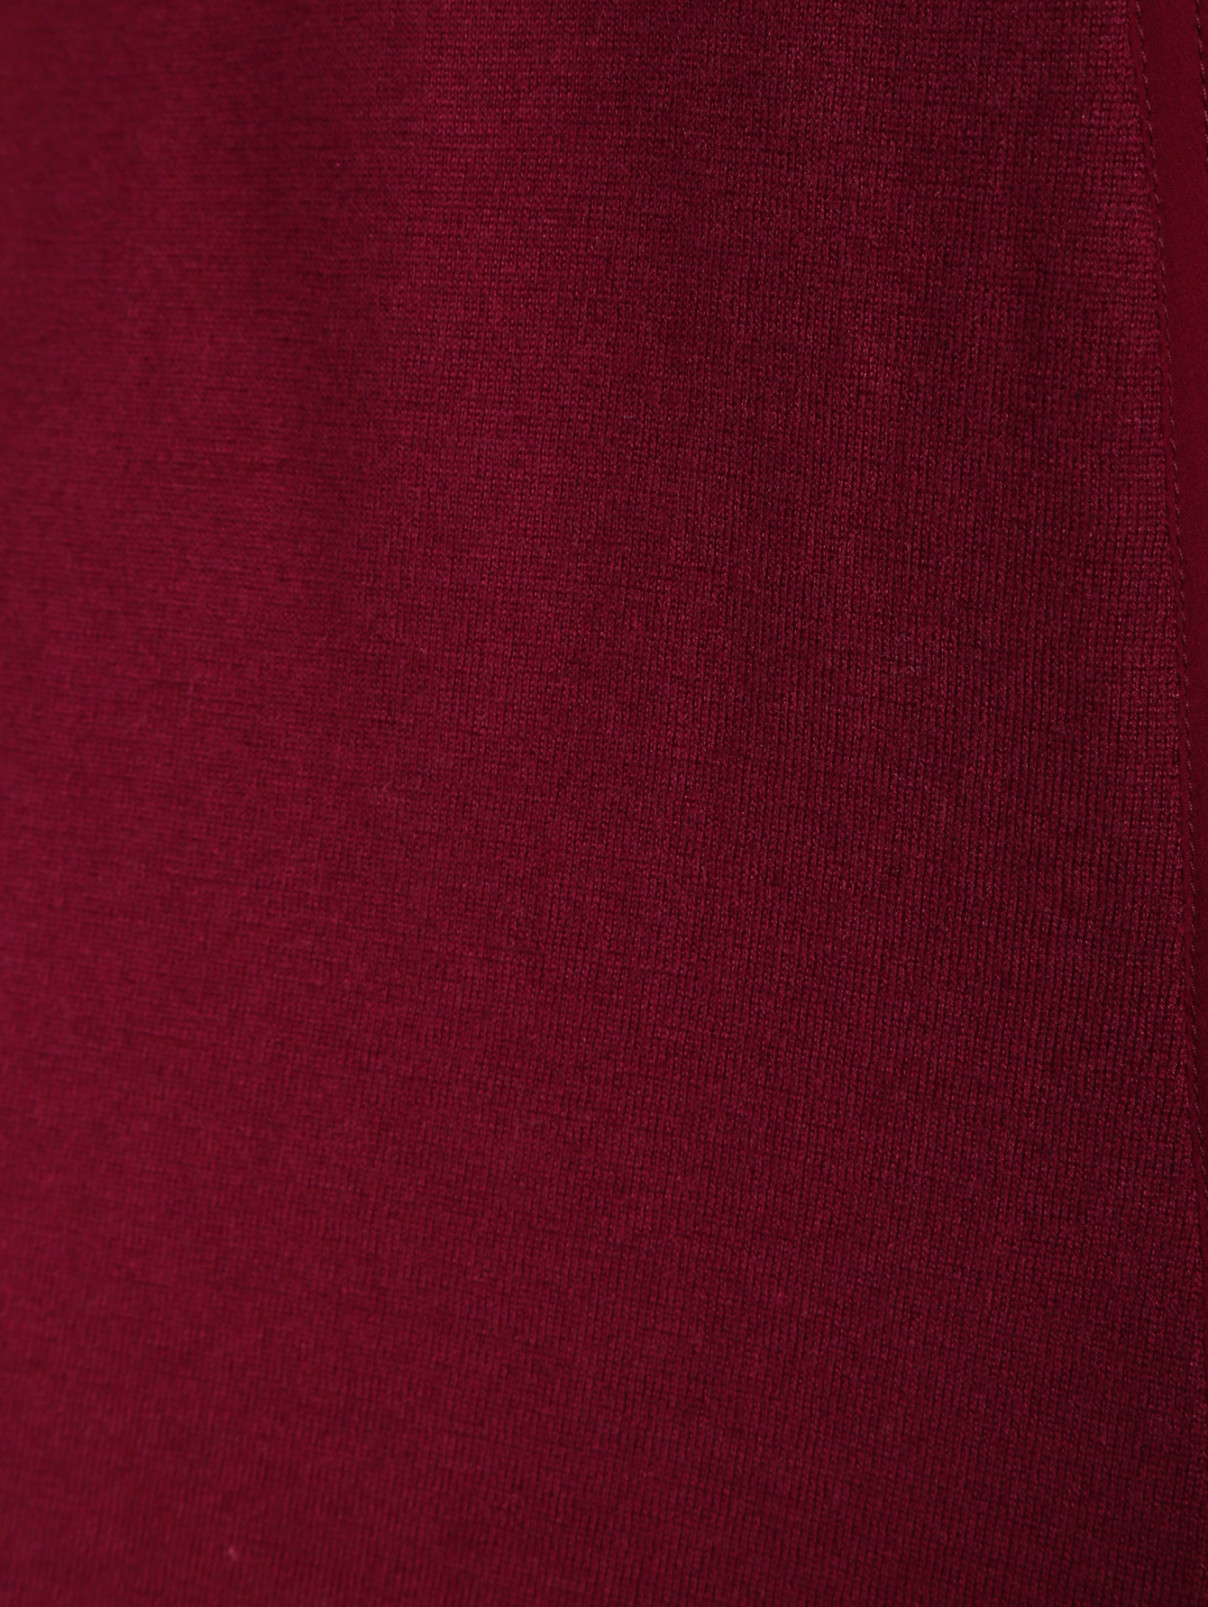 Кардиган из шерсти и шелка Marina Rinaldi  –  Деталь  – Цвет:  Красный